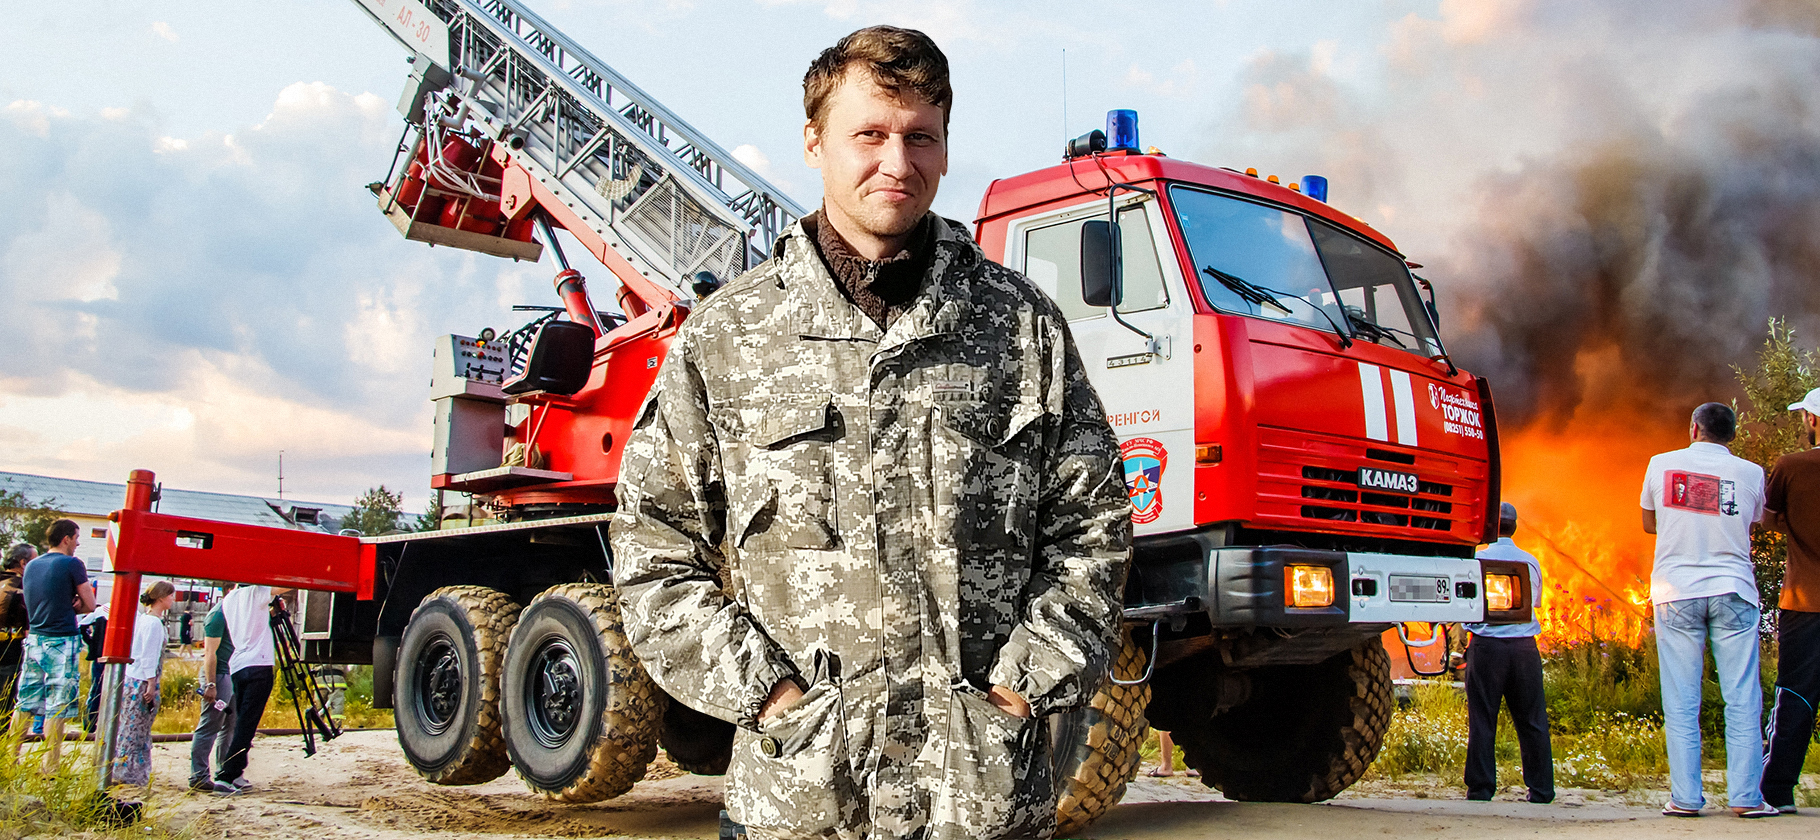 Как дачника заставили заплатить 10 млн рублей за пожар, который устроил другой человек